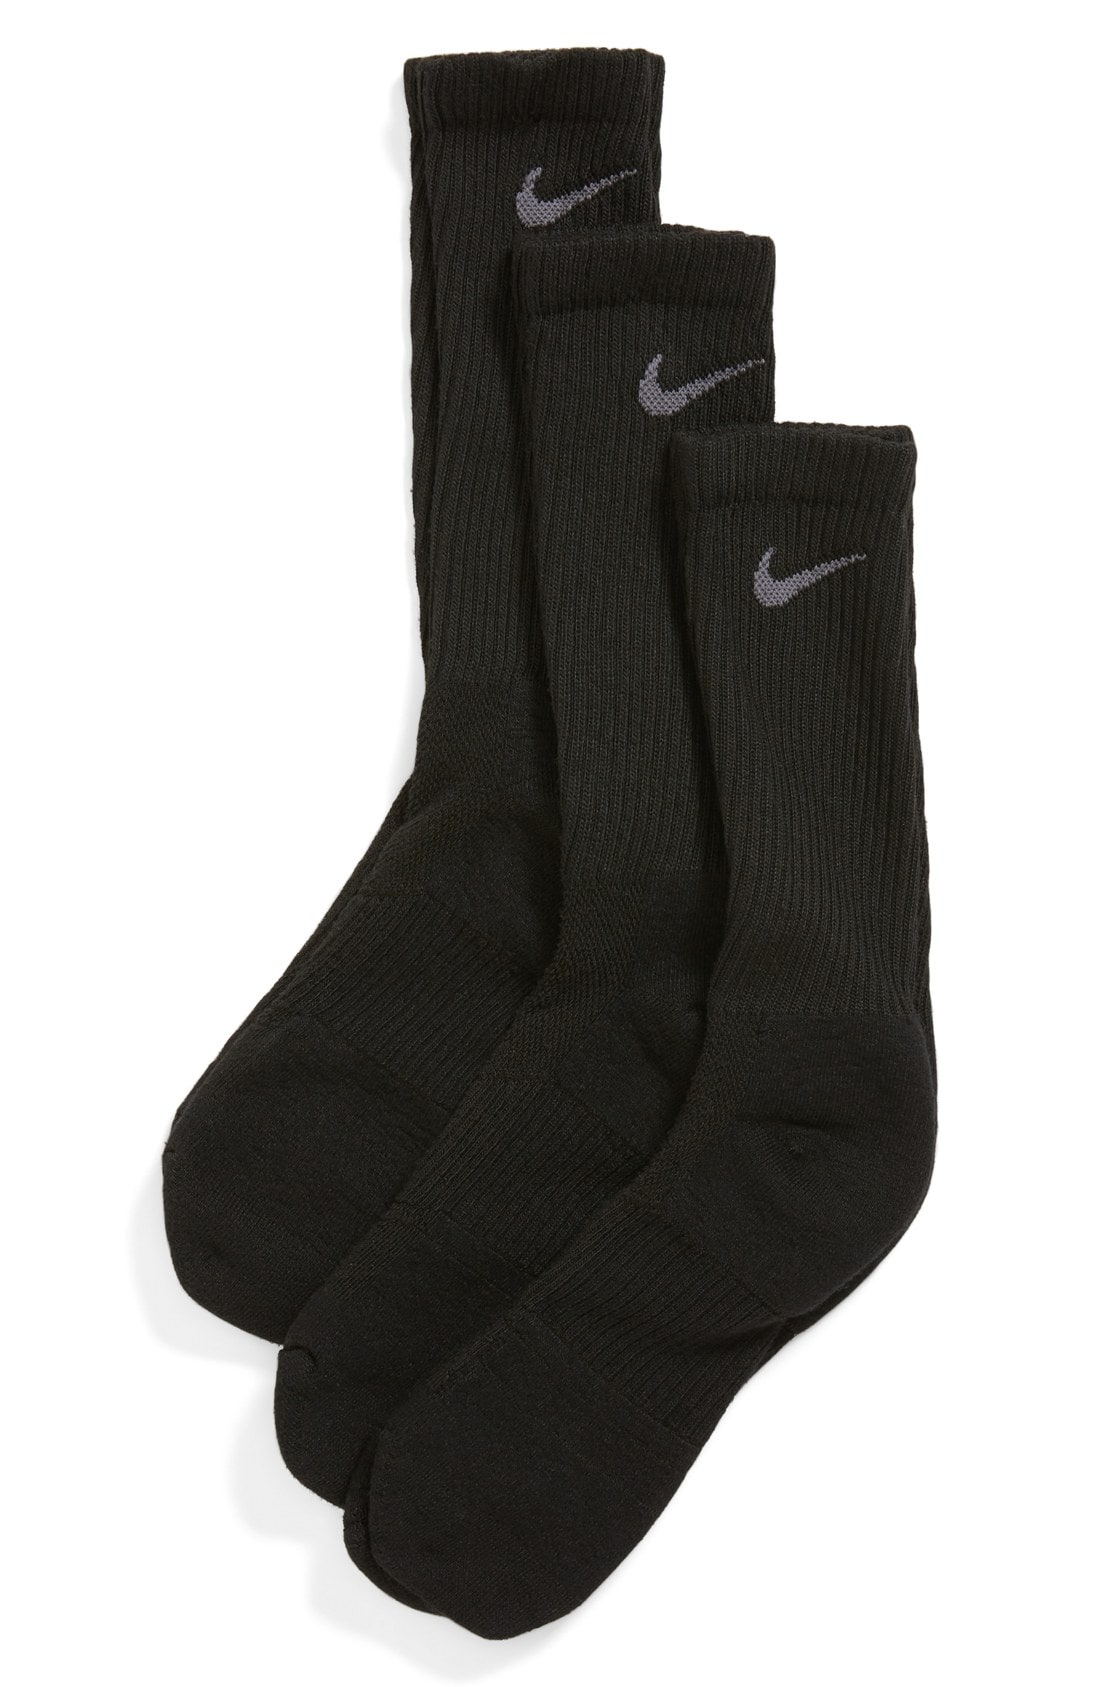 Nike Dri-FIT 3-Pack Crew Socks